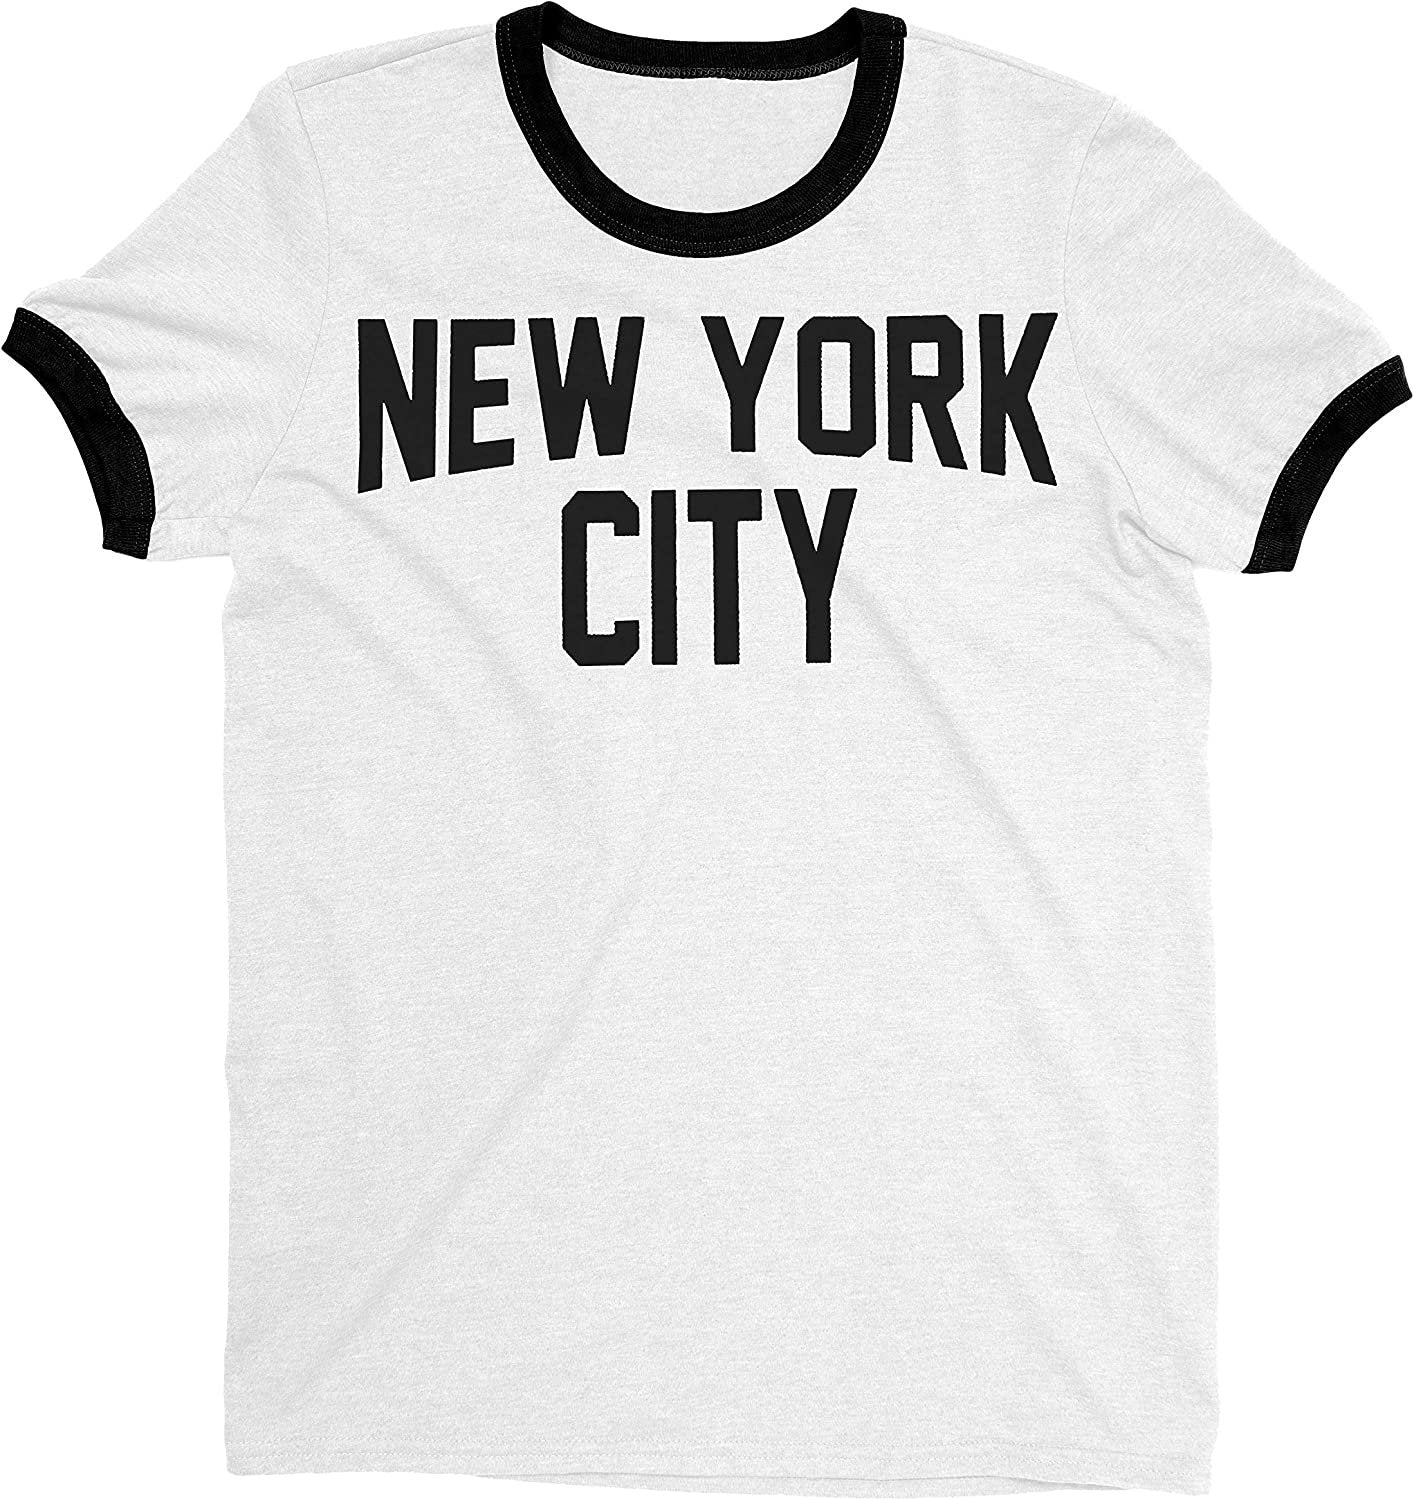 Men's New York City John Lennon Ringer Tee T-Shirt (White/Black, Regular Print)